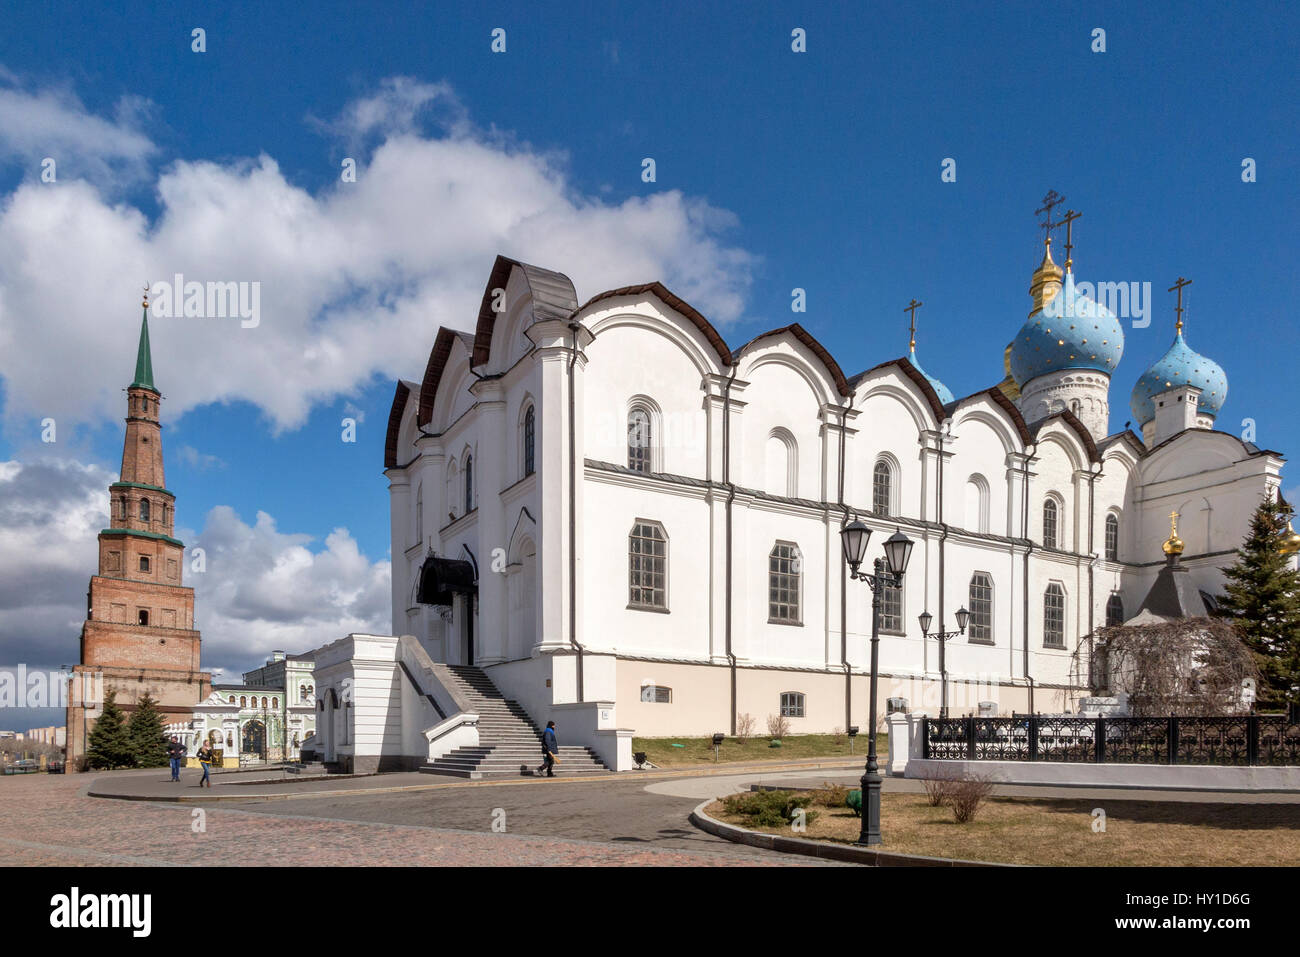 La cathédrale de l'annonciation et la tour de Soyembika Kremlin de Kazan, République du Tatarstan, Russie Banque D'Images